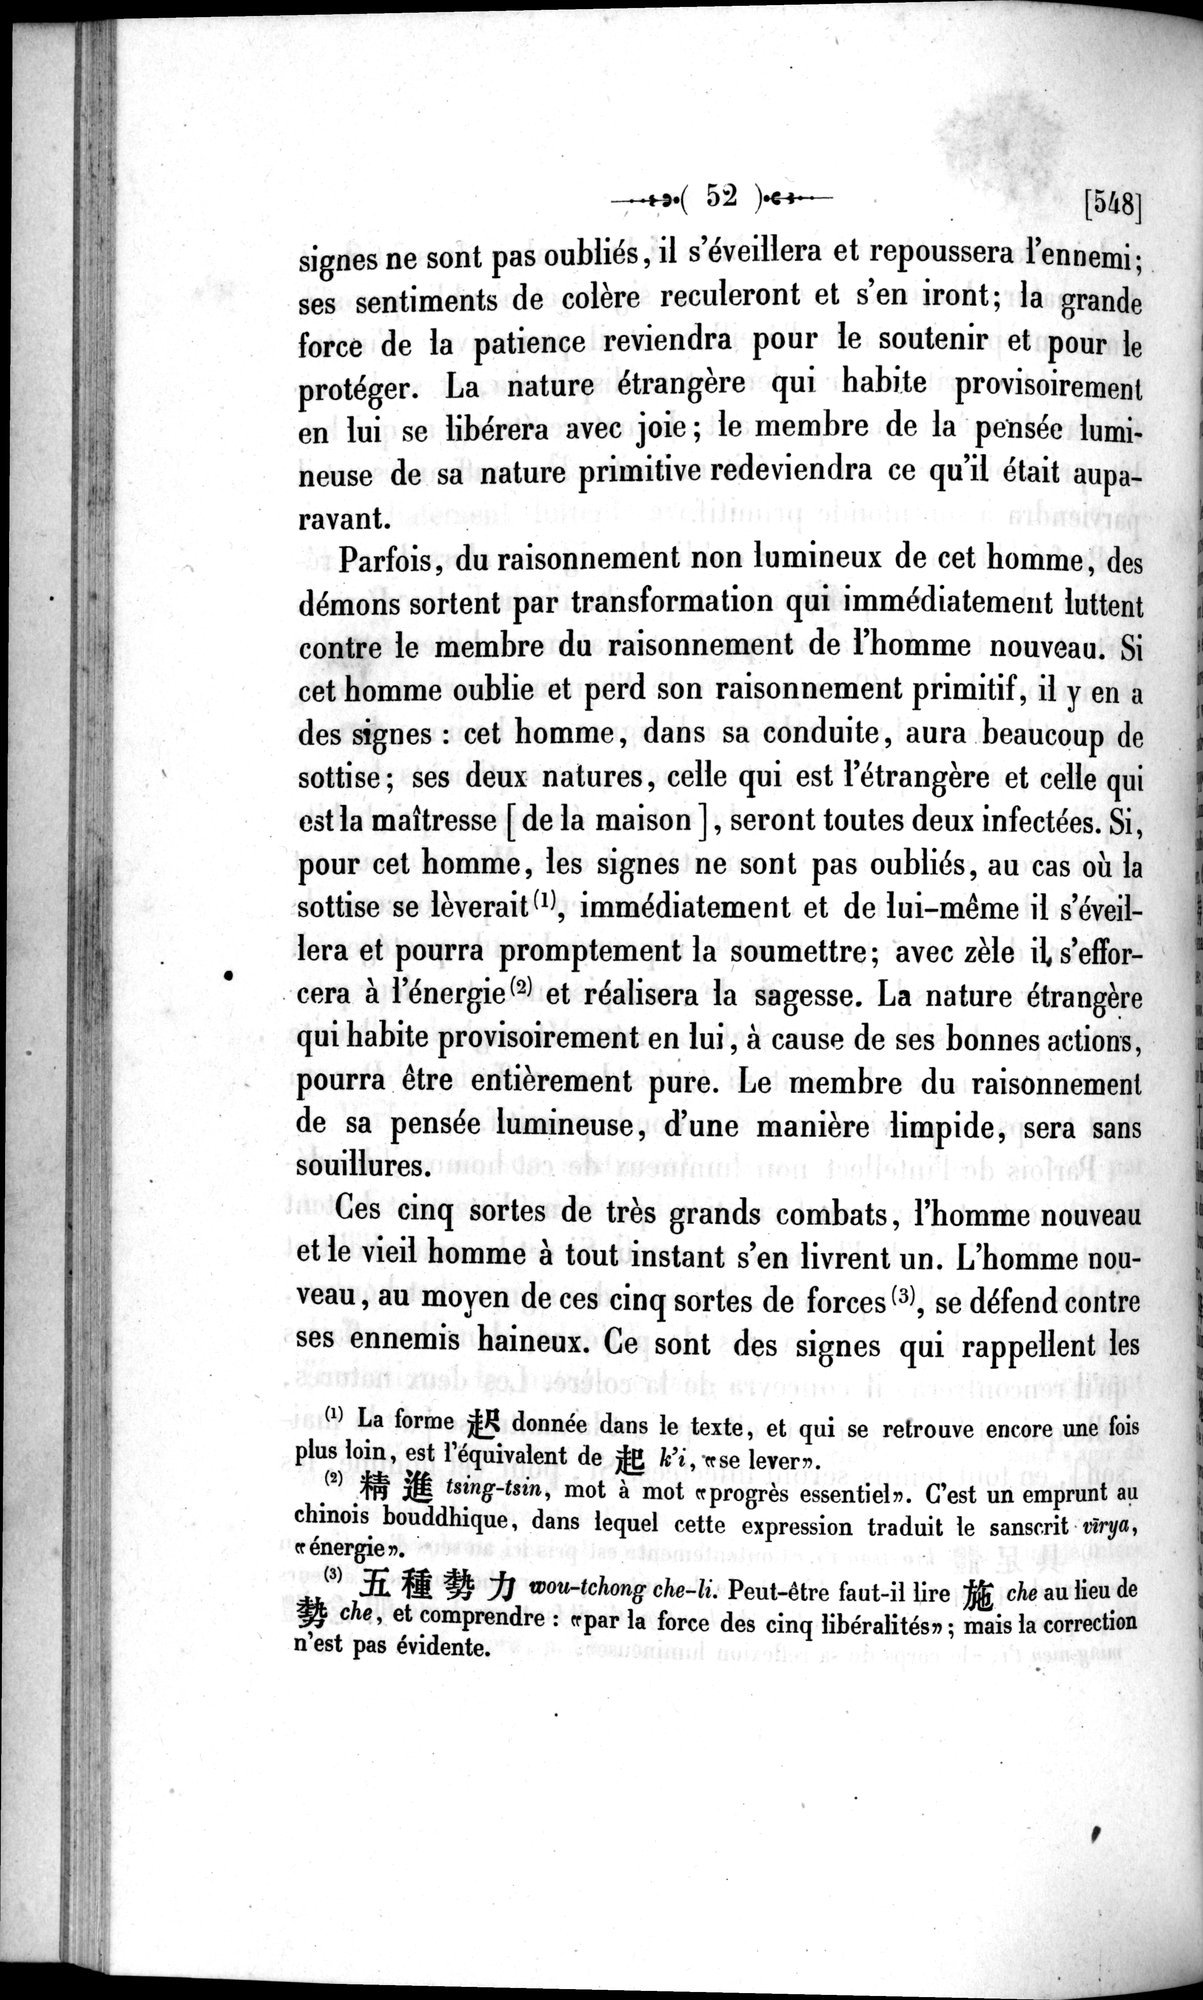 Un traité manichéen retrouvé en Chine : vol.1 / Page 62 (Grayscale High Resolution Image)